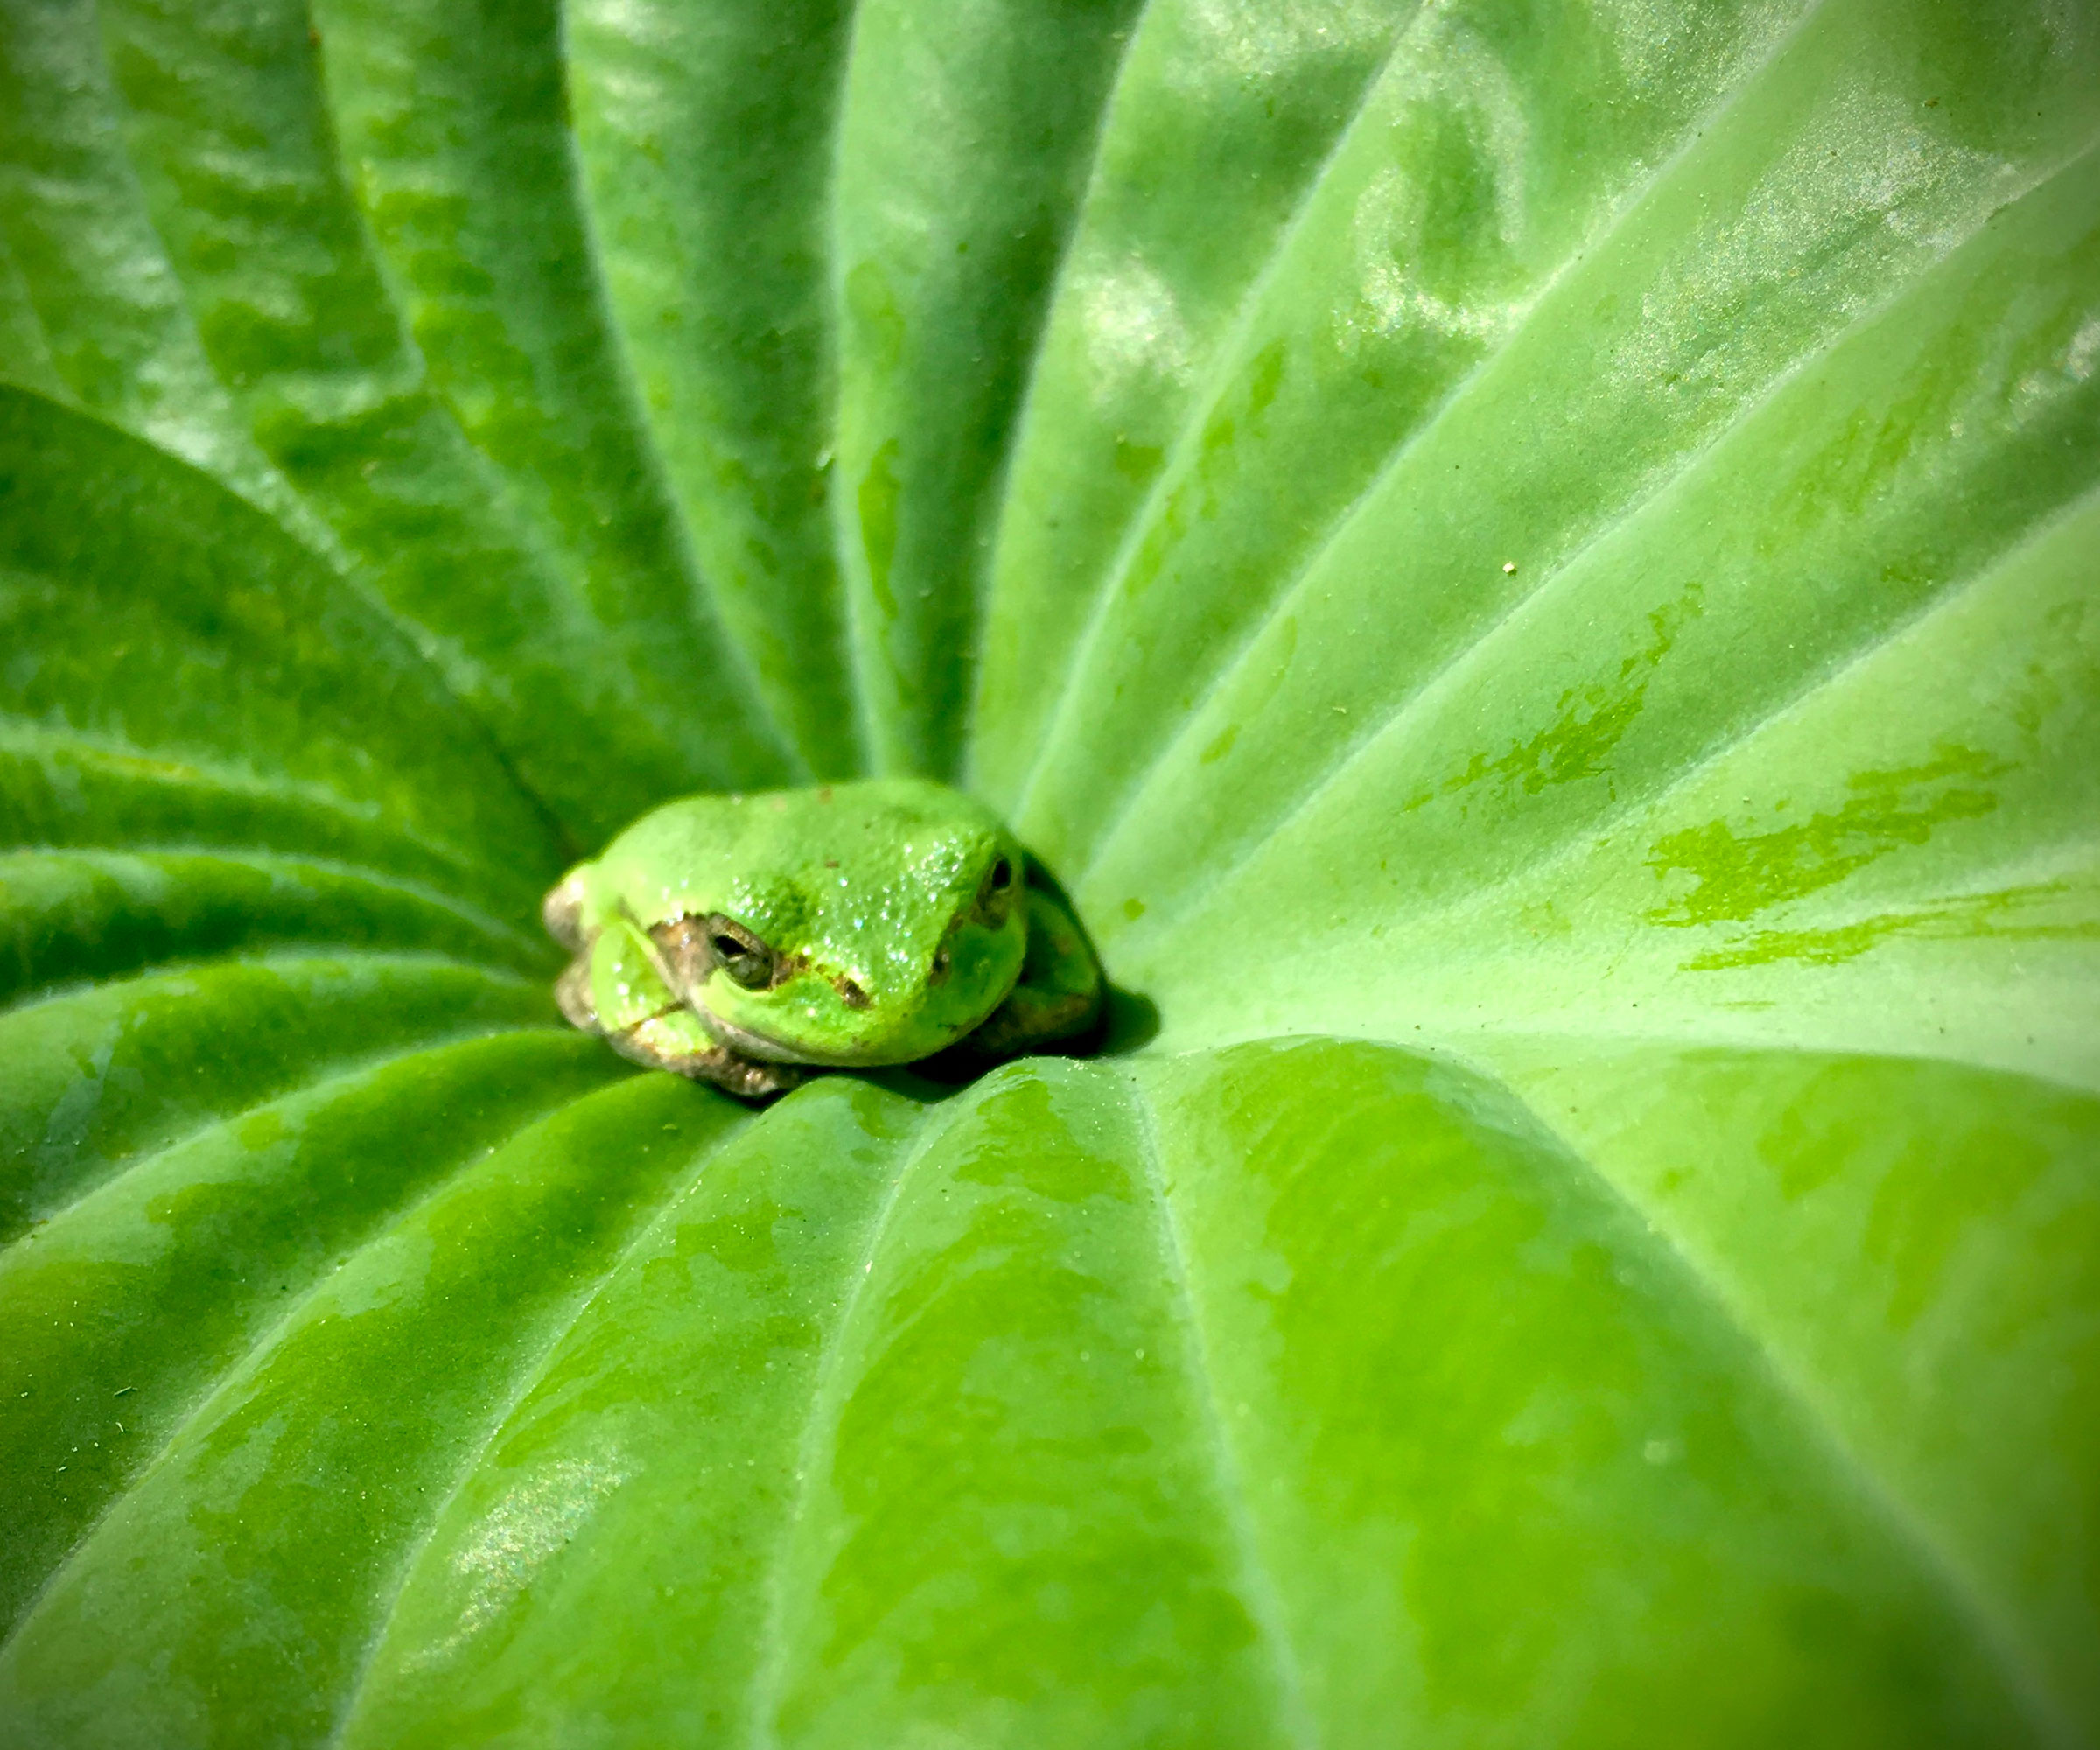 frog sat in giant hosta plant